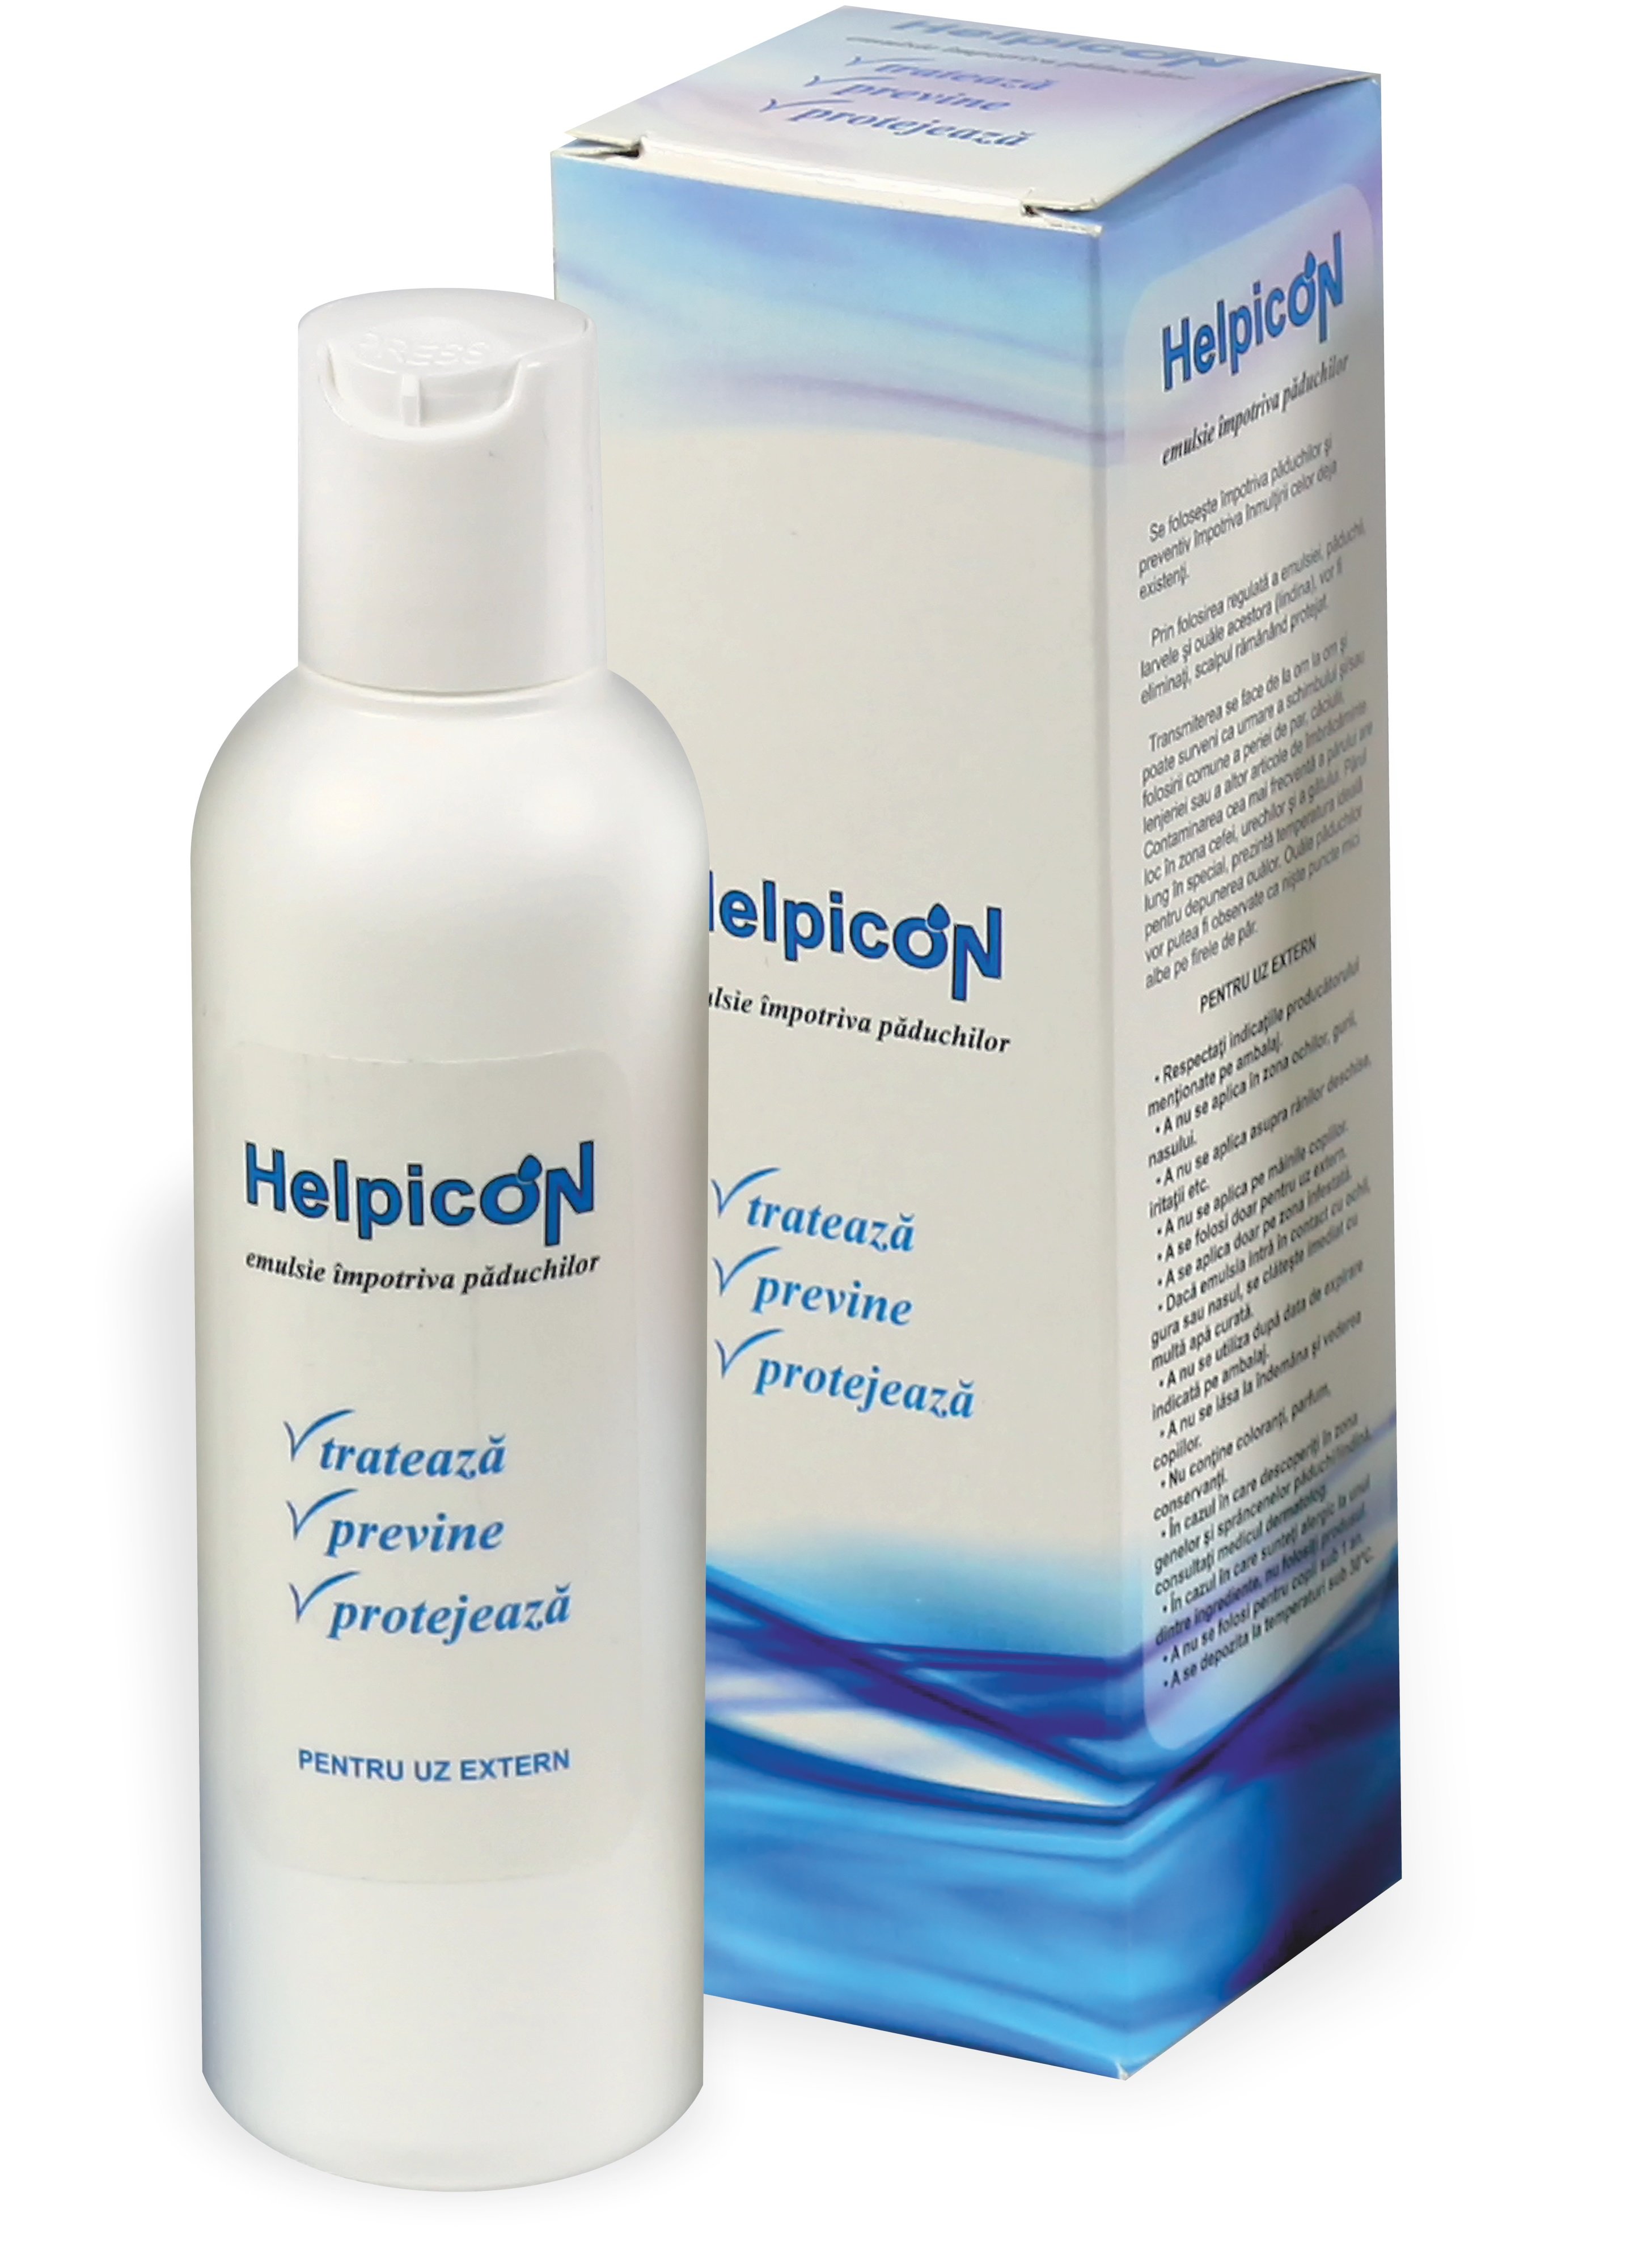 Helpicon Emulsie Antipaduchi X 100ml + Corpusan Skindisinfection Dezinfectant Pentru Maini 100